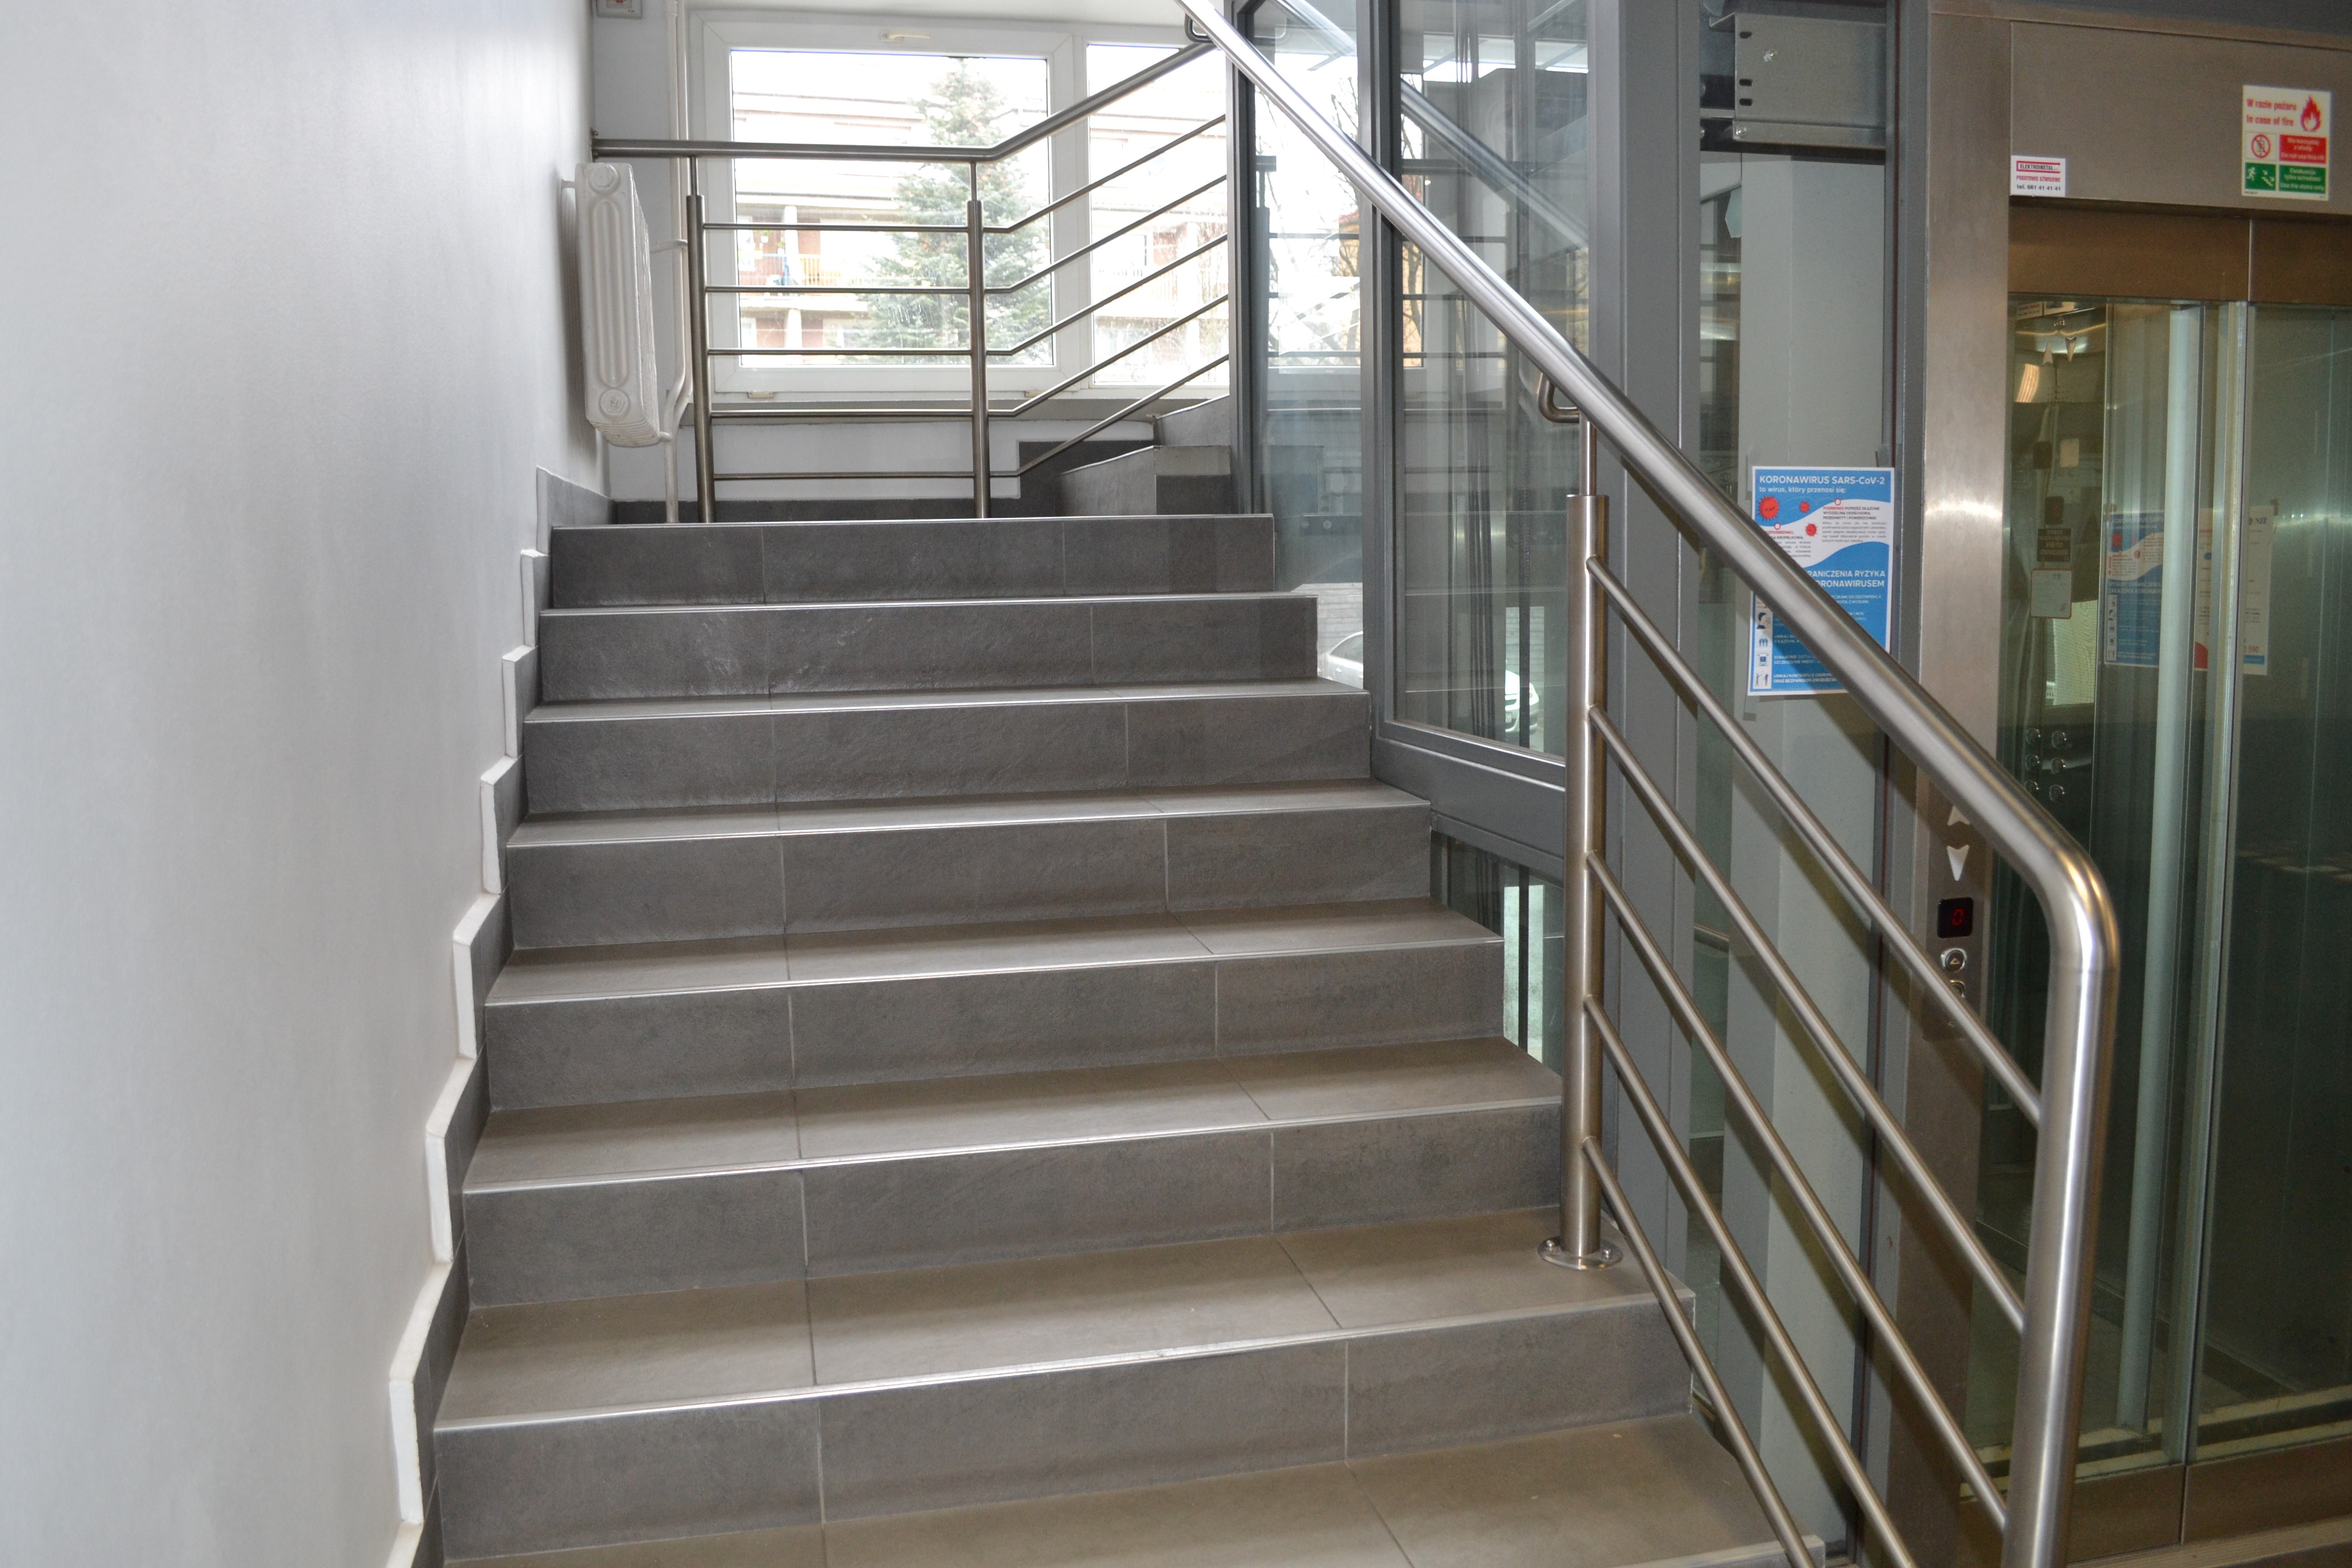 Klatka schodowa z jasnoszarymi schodami, otaczającymi szyb windy. Po prawej stronie przeszklone drzwi do kabiny.